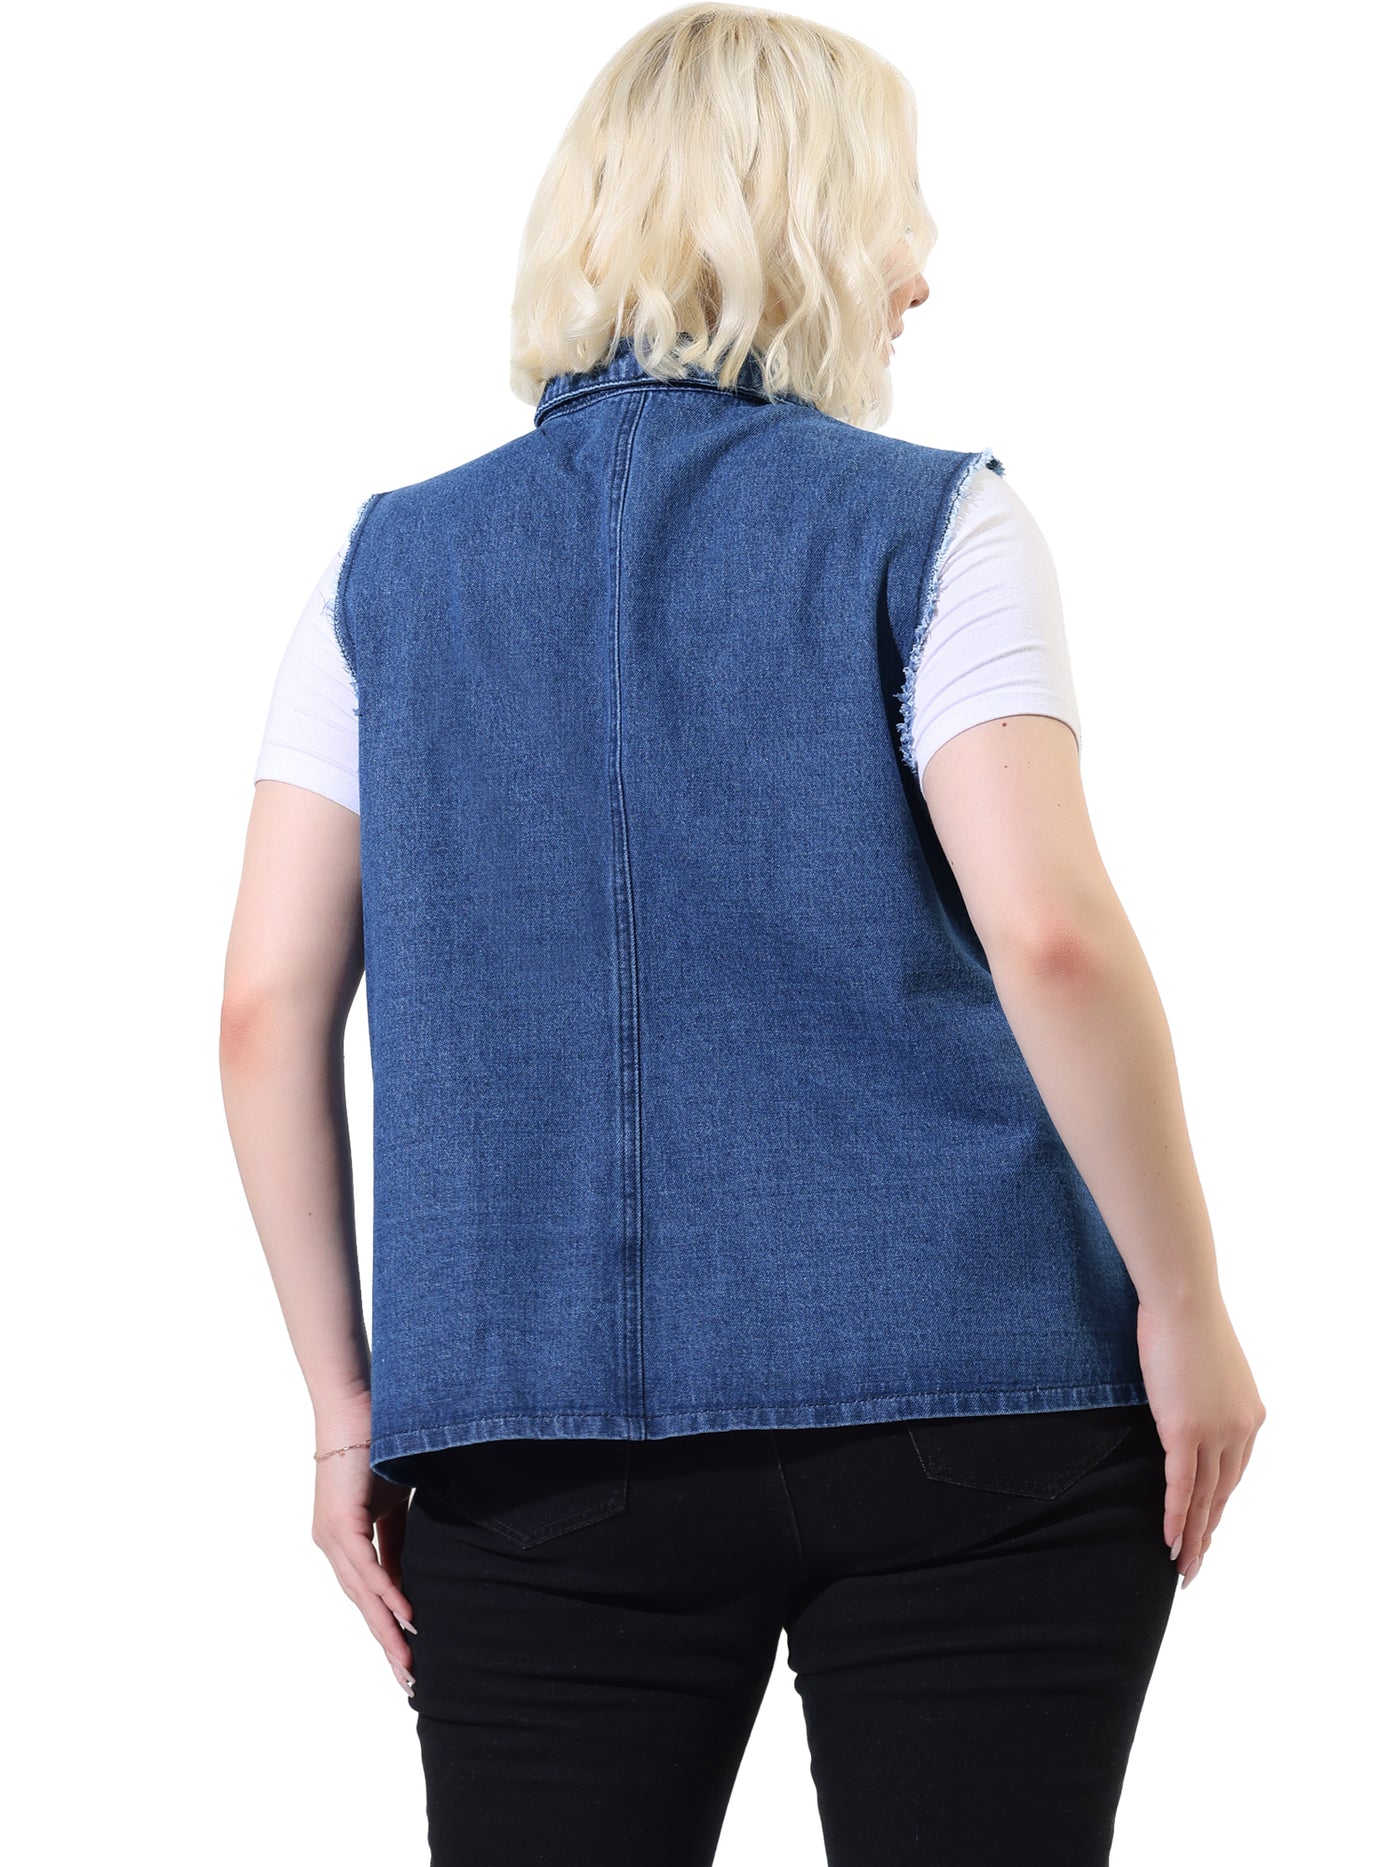 Bublédon Plus Size Denim Vests for Women Causal Button Long Vest Jackets